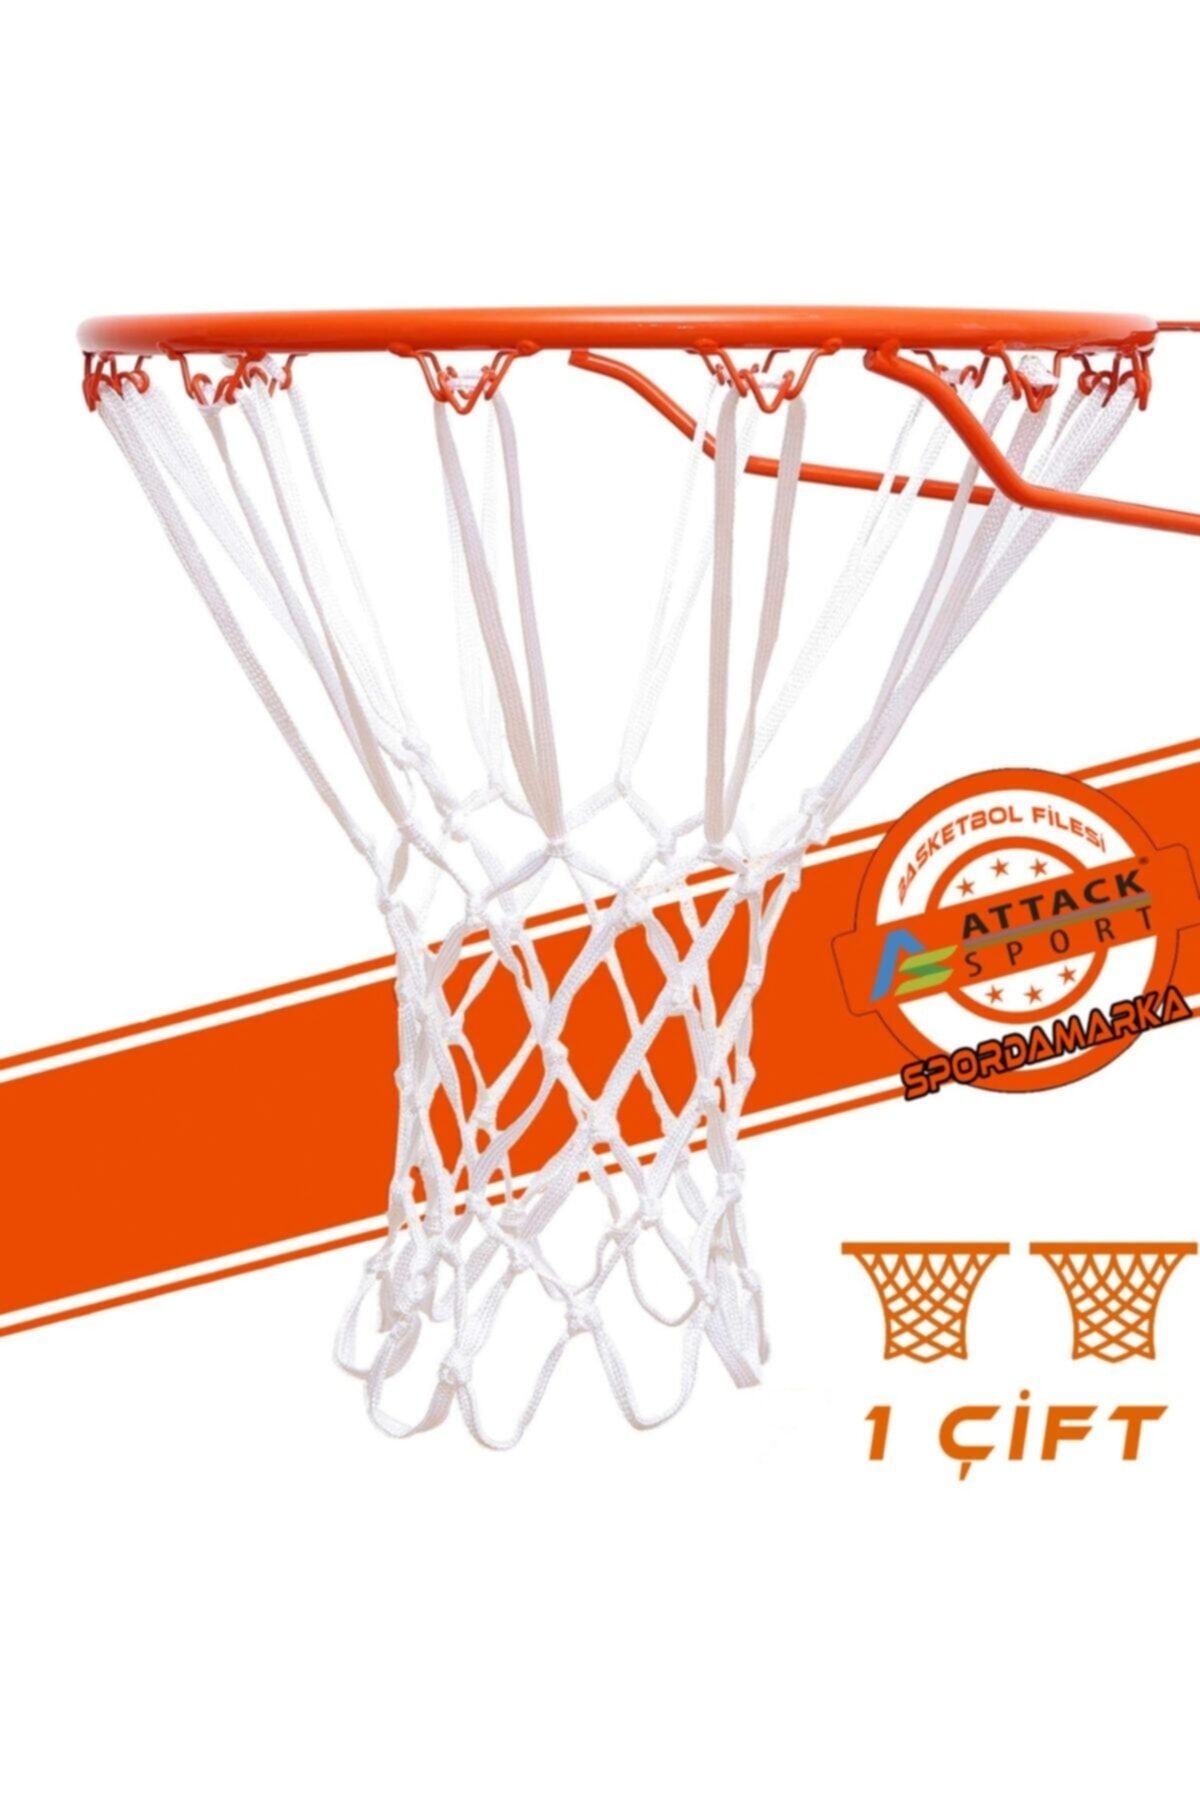 Attack Sport Basketbol Filesi Nizami Profesyonel - 5 mm 4x4 cm